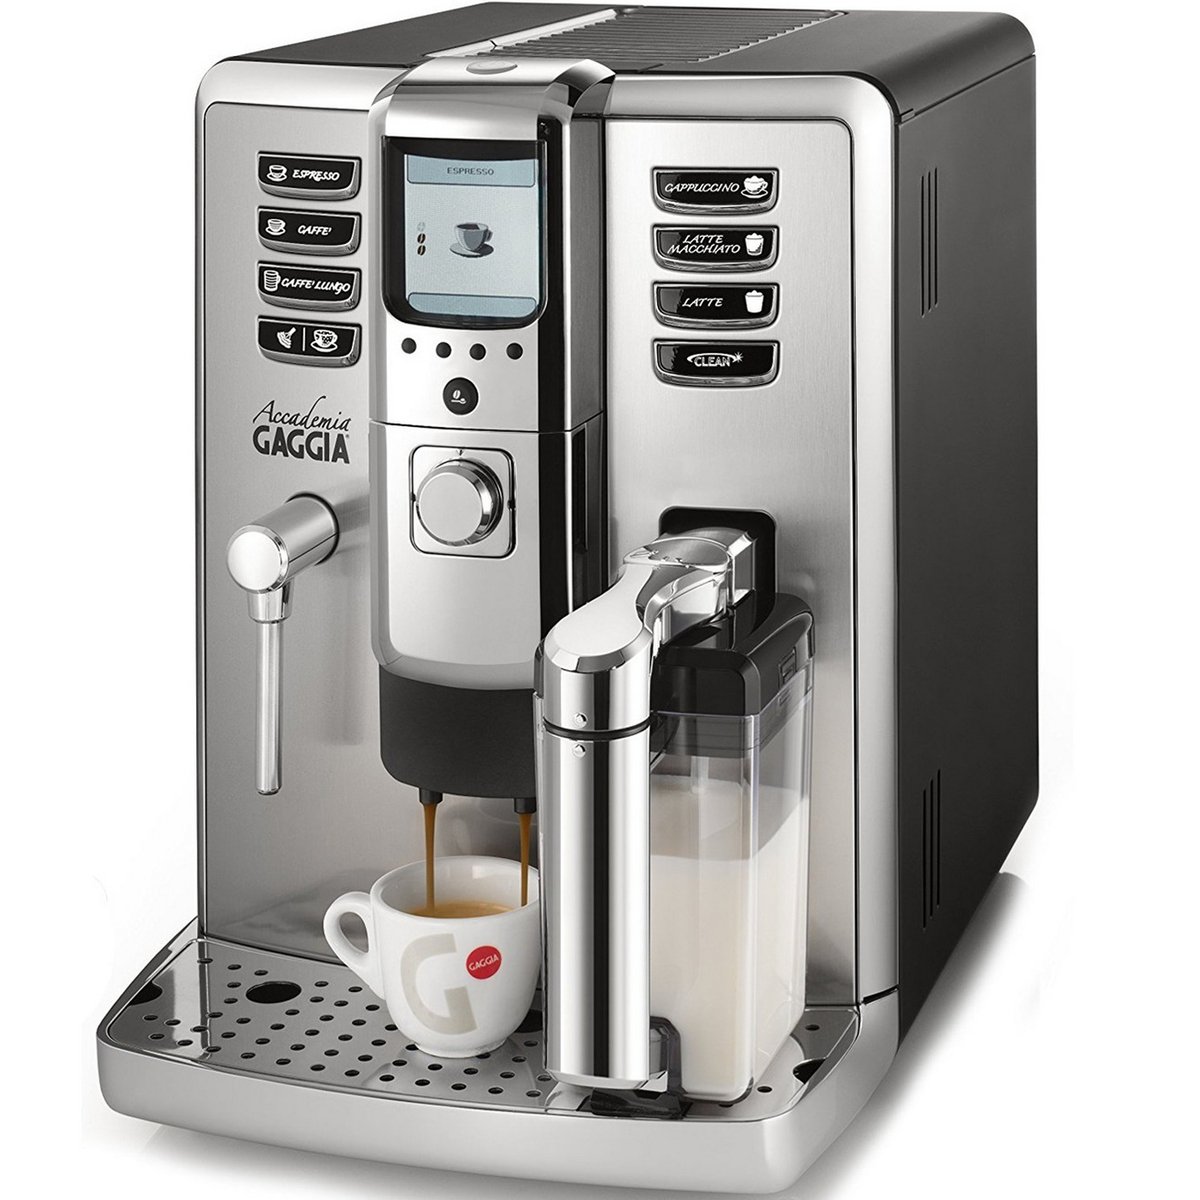 Gaggia Automatic Coffee Maker Accademia